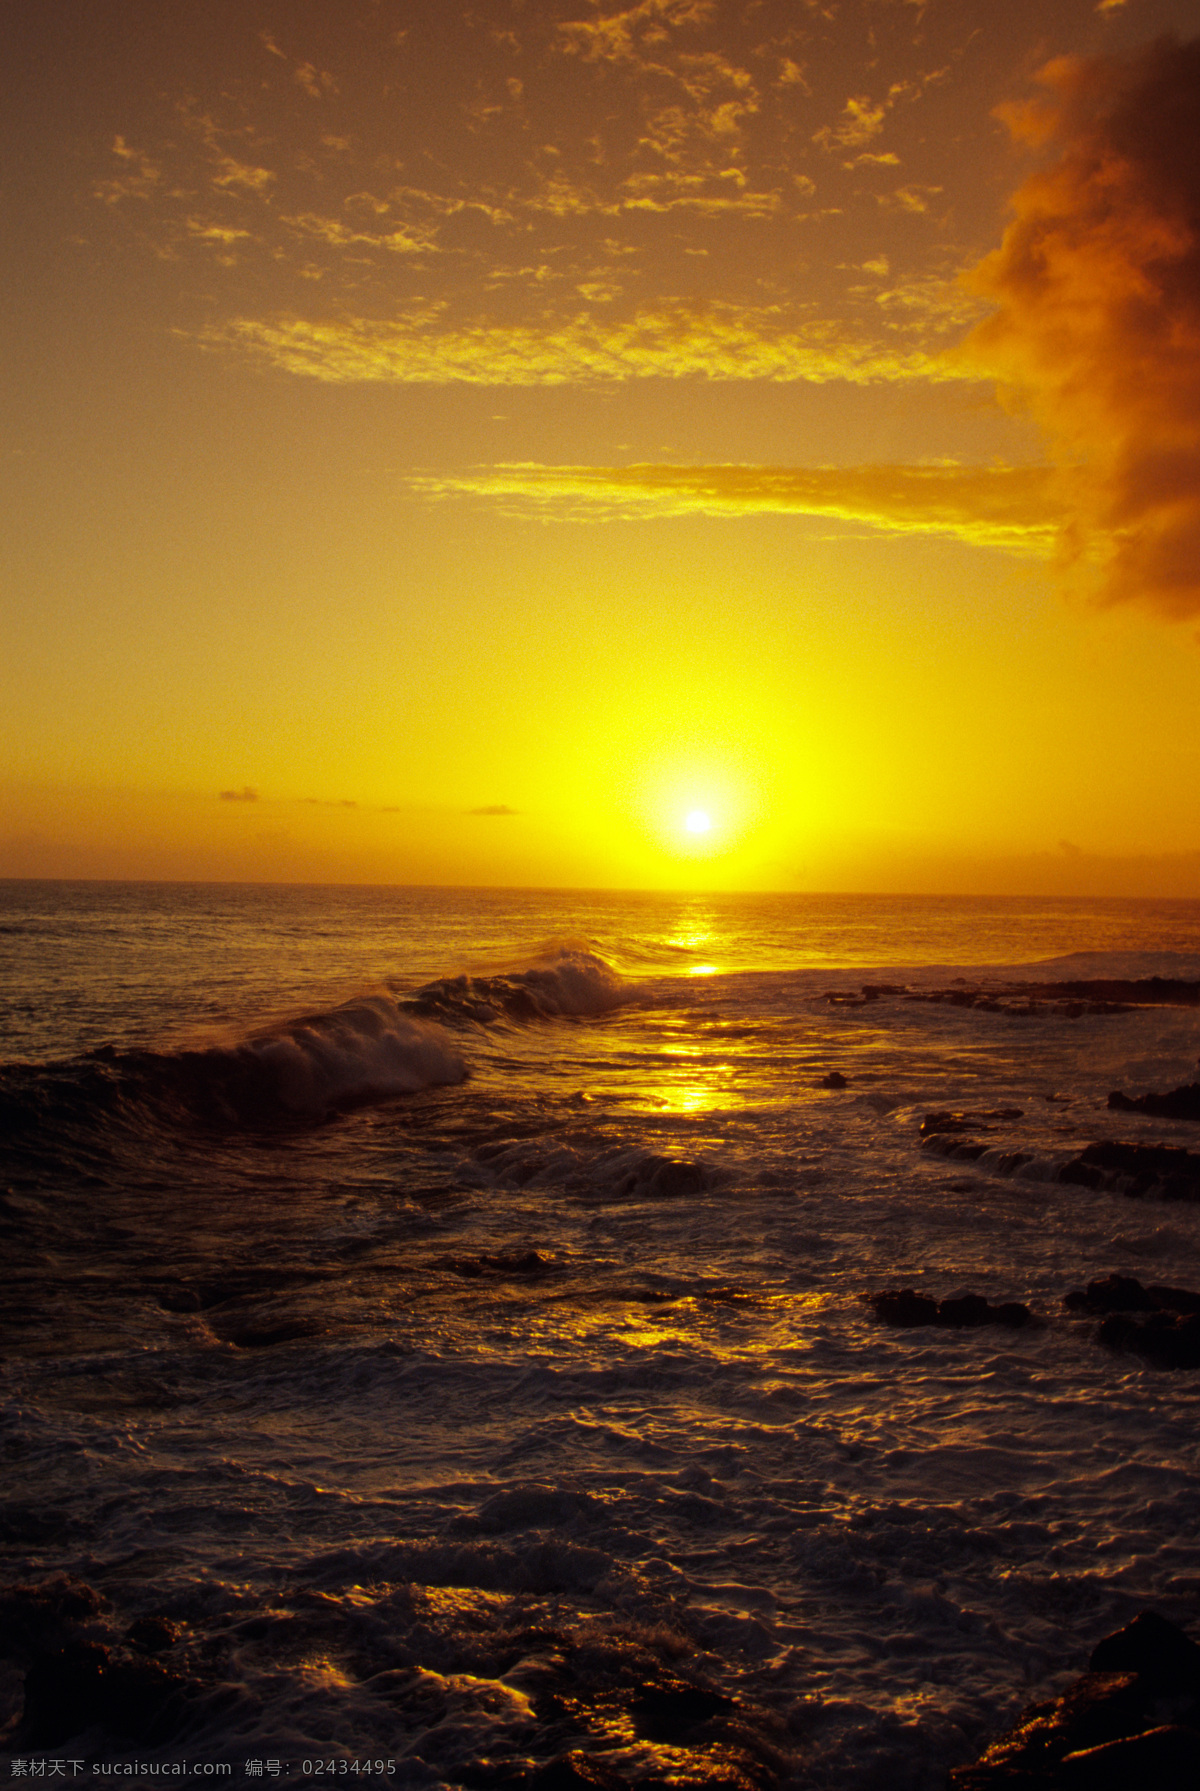 傍晚 大海 风景 美丽海滩 海边风景 海浪 浪花 夕阳 落日 黄昏 海平面 海洋 海景 景色 美景 摄影图 高清图片 大海图片 风景图片